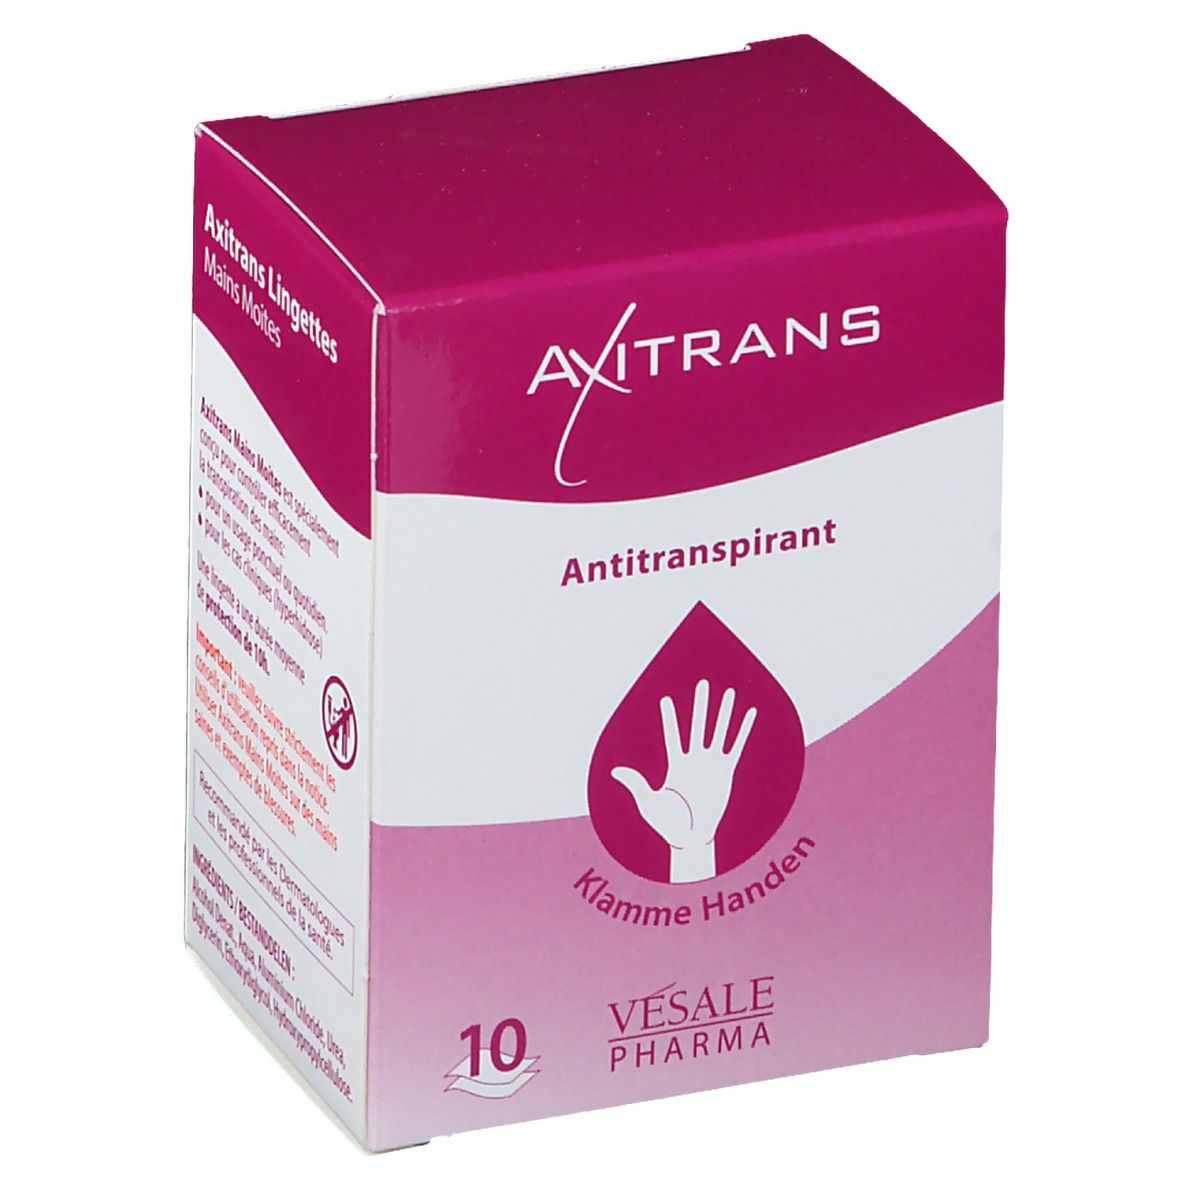 AXITRANS Antitranspirant Mains moites